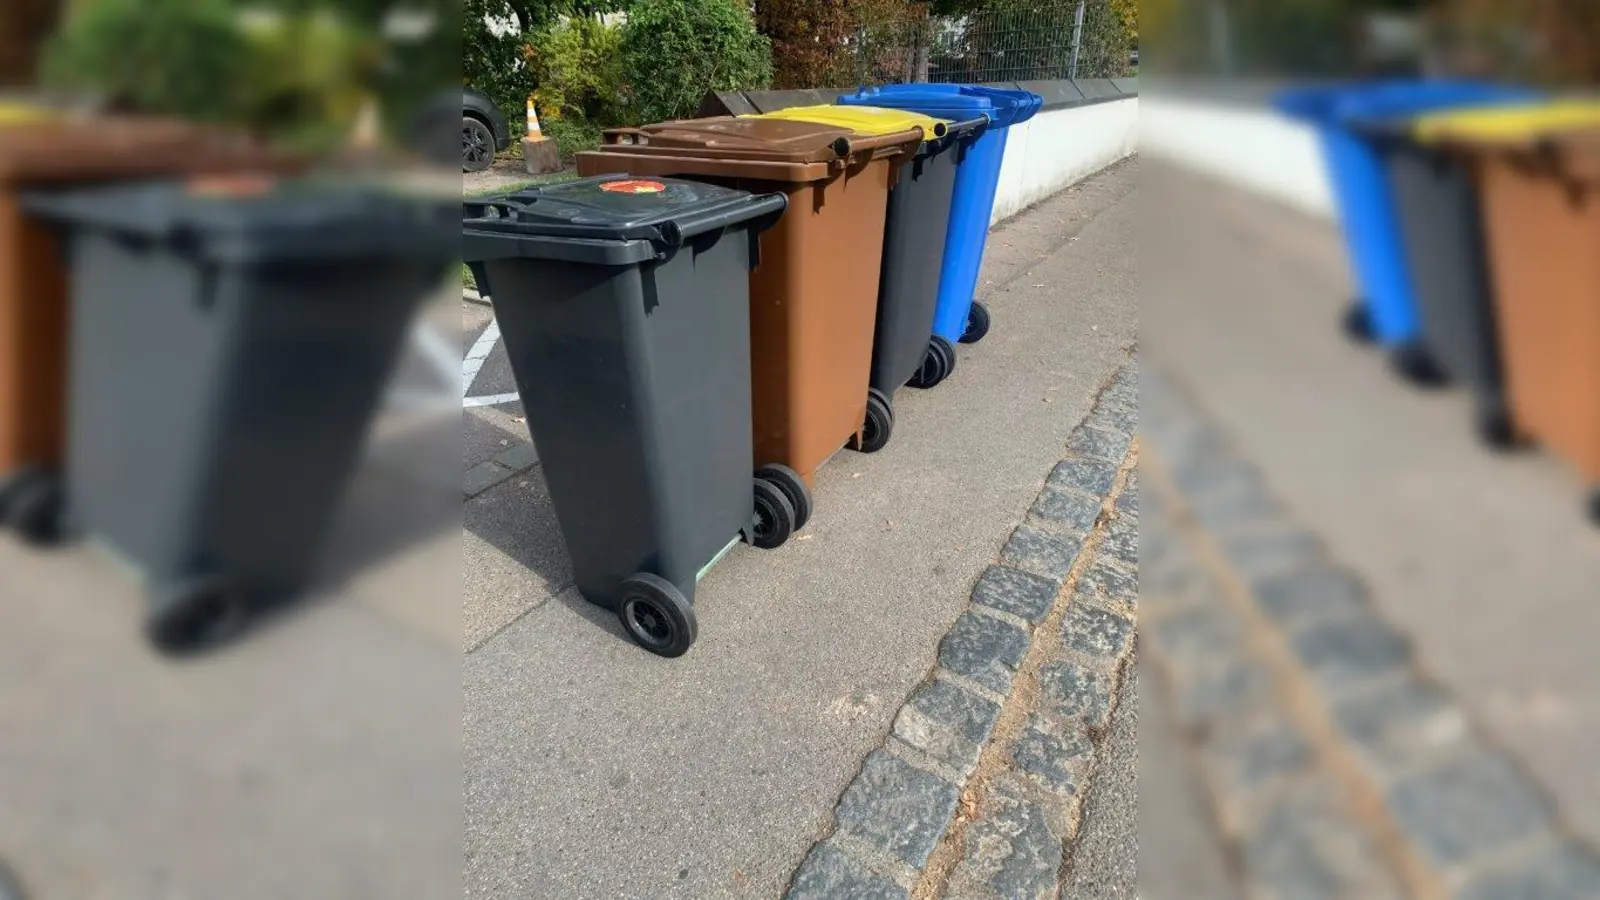 <b>Vergangenes Jahr</b> fiel die Bilanz für die Müllentsorgung im Landkreis Aichach-Friedberg sehr positiv aus. Würde sich dieser Trend fortsetzen, könnten in drei Jahren die Müllgebühren sinken.  (Archivfoto: Wolfgang Müller)